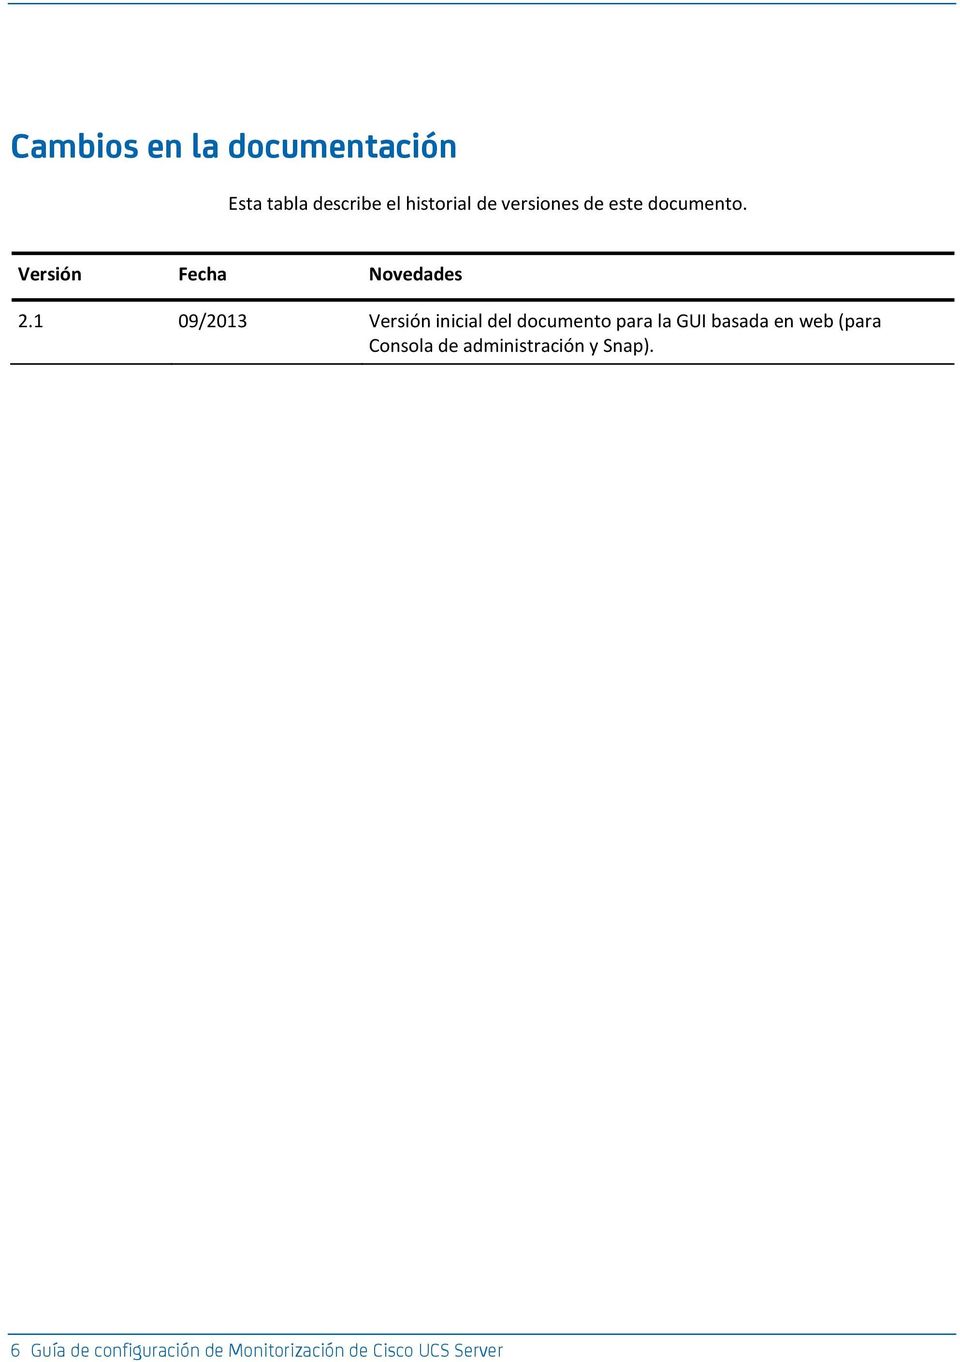 1 09/2013 Verión inicial del documento para la GUI baada en web